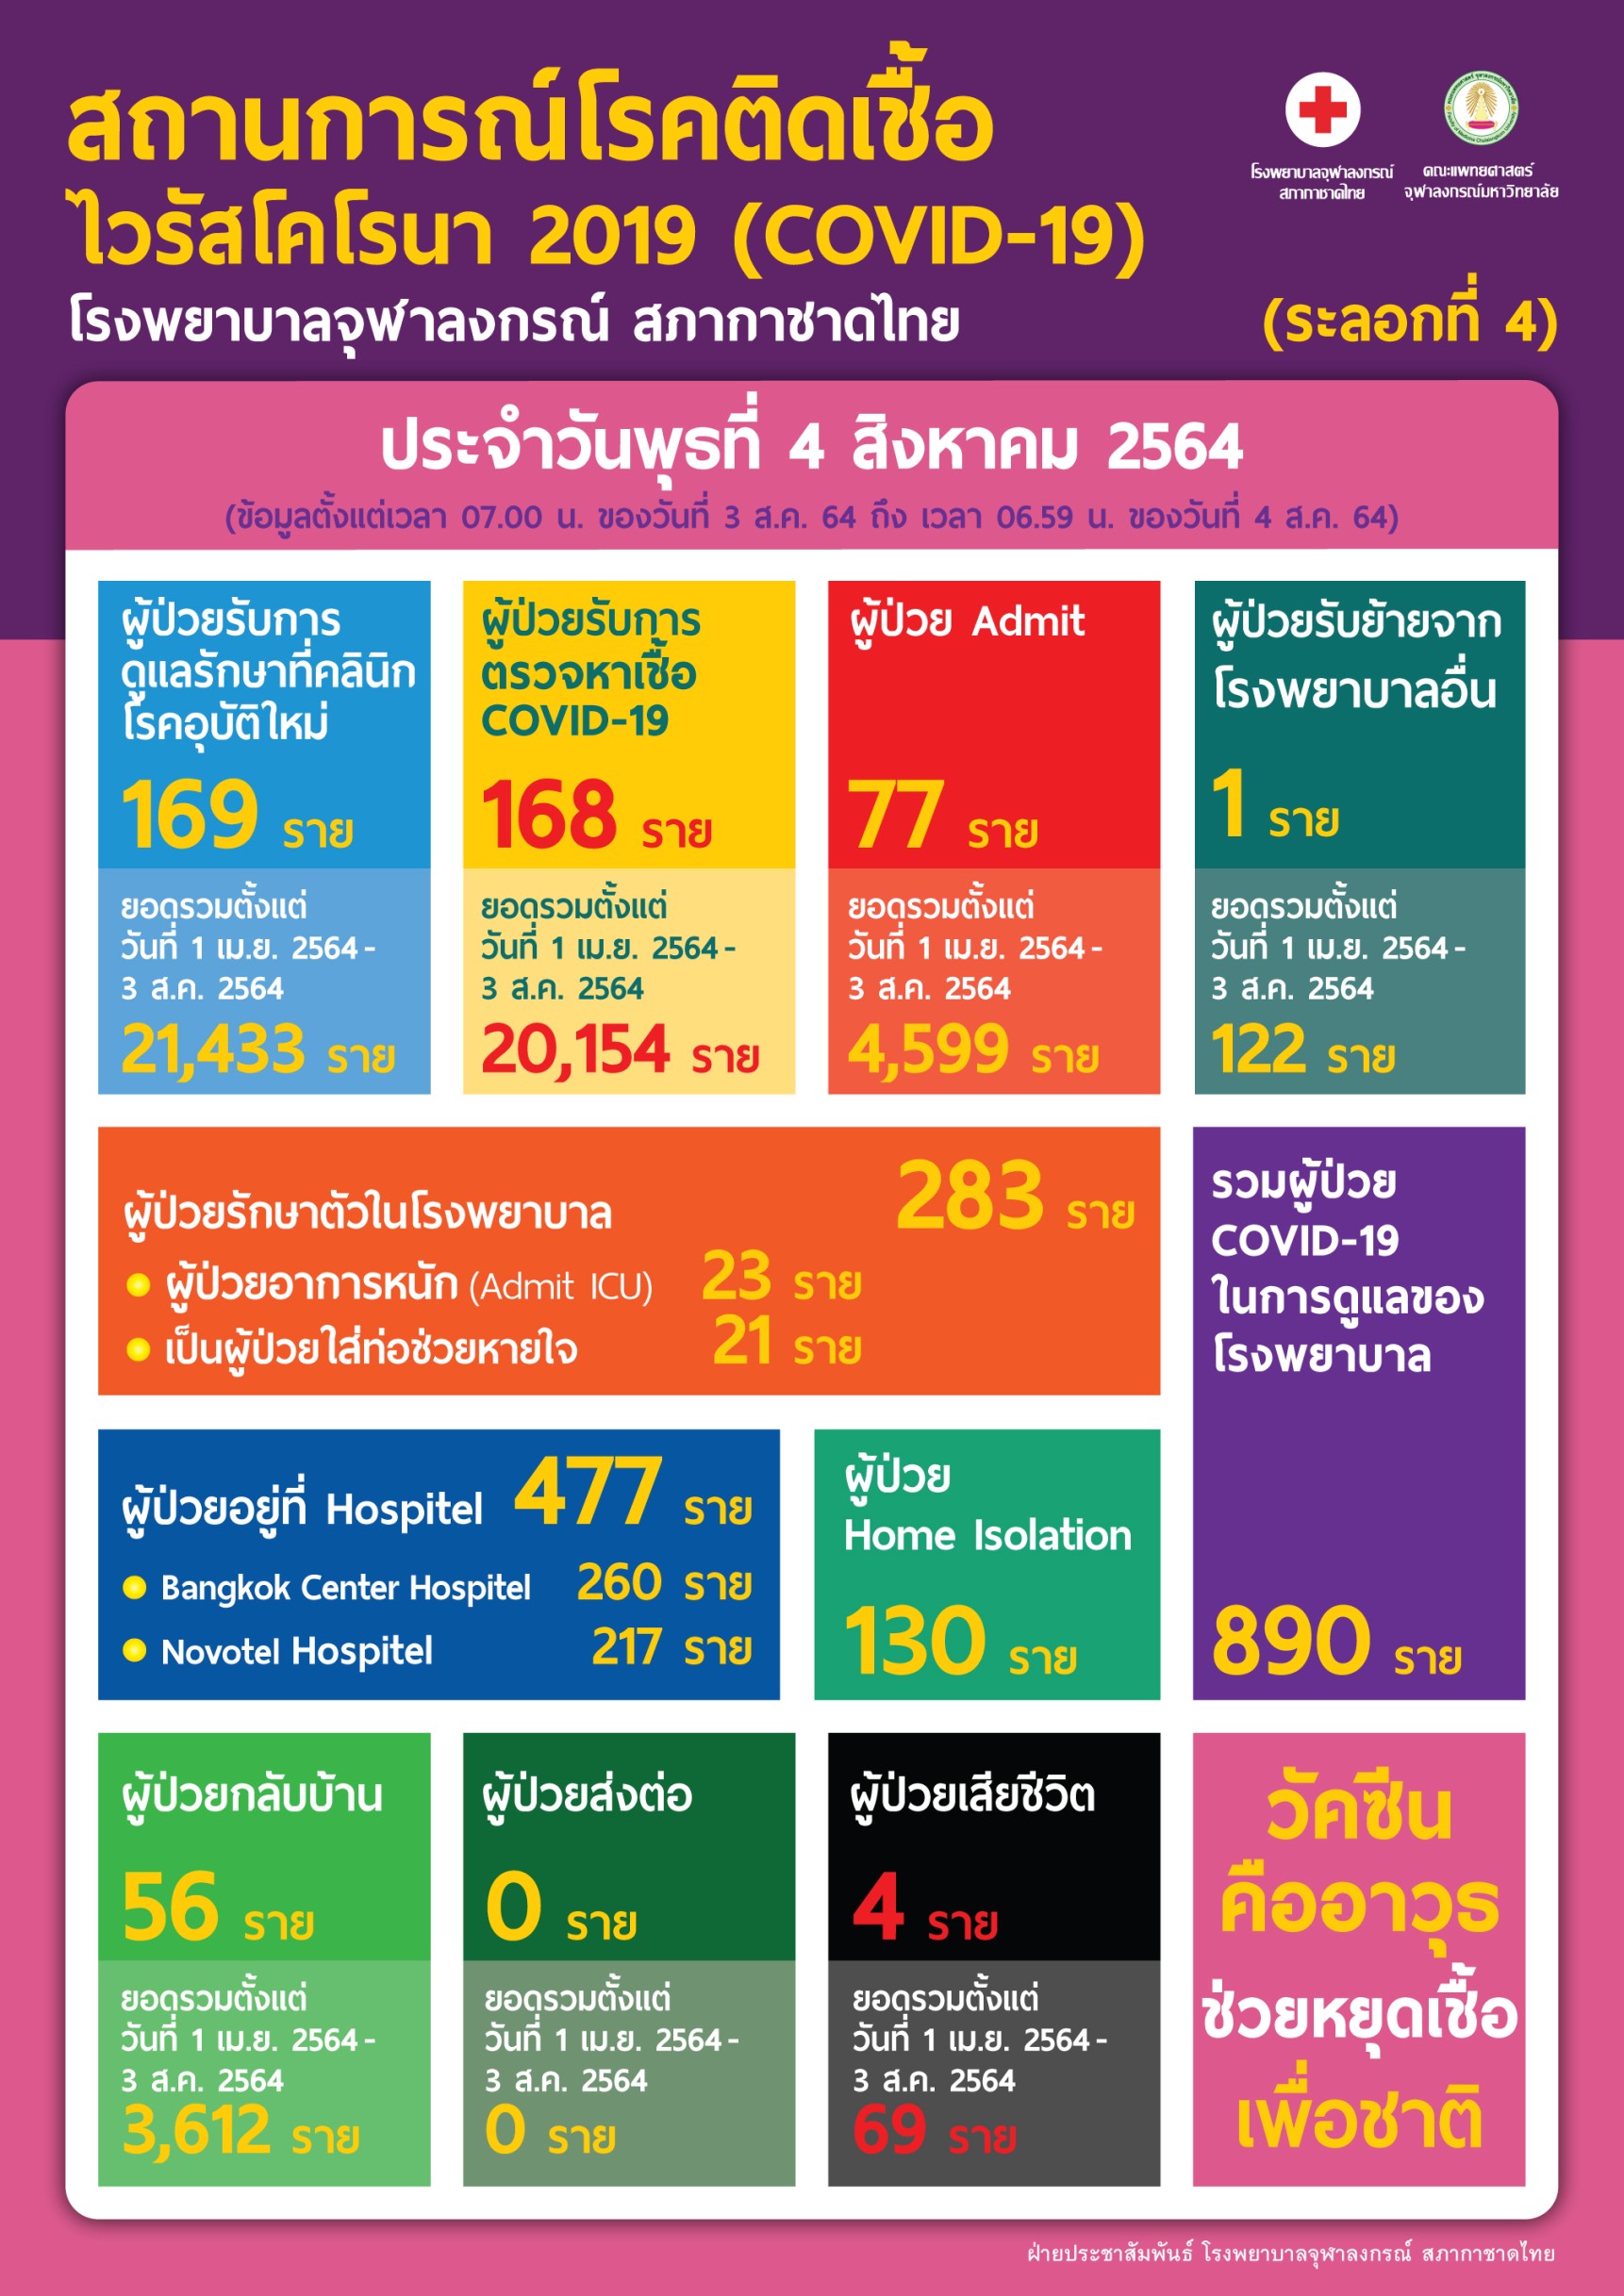 สถานการณ์โรคติดเชื้อไวรัสโคโรนา 2019 (COVID-19)  (ระลอกที่ 4) โรงพยาบาลจุฬาลงกรณ์ สภากาชาดไทย  ประจำวันพุธที่ 4 สิงหาคม 2564